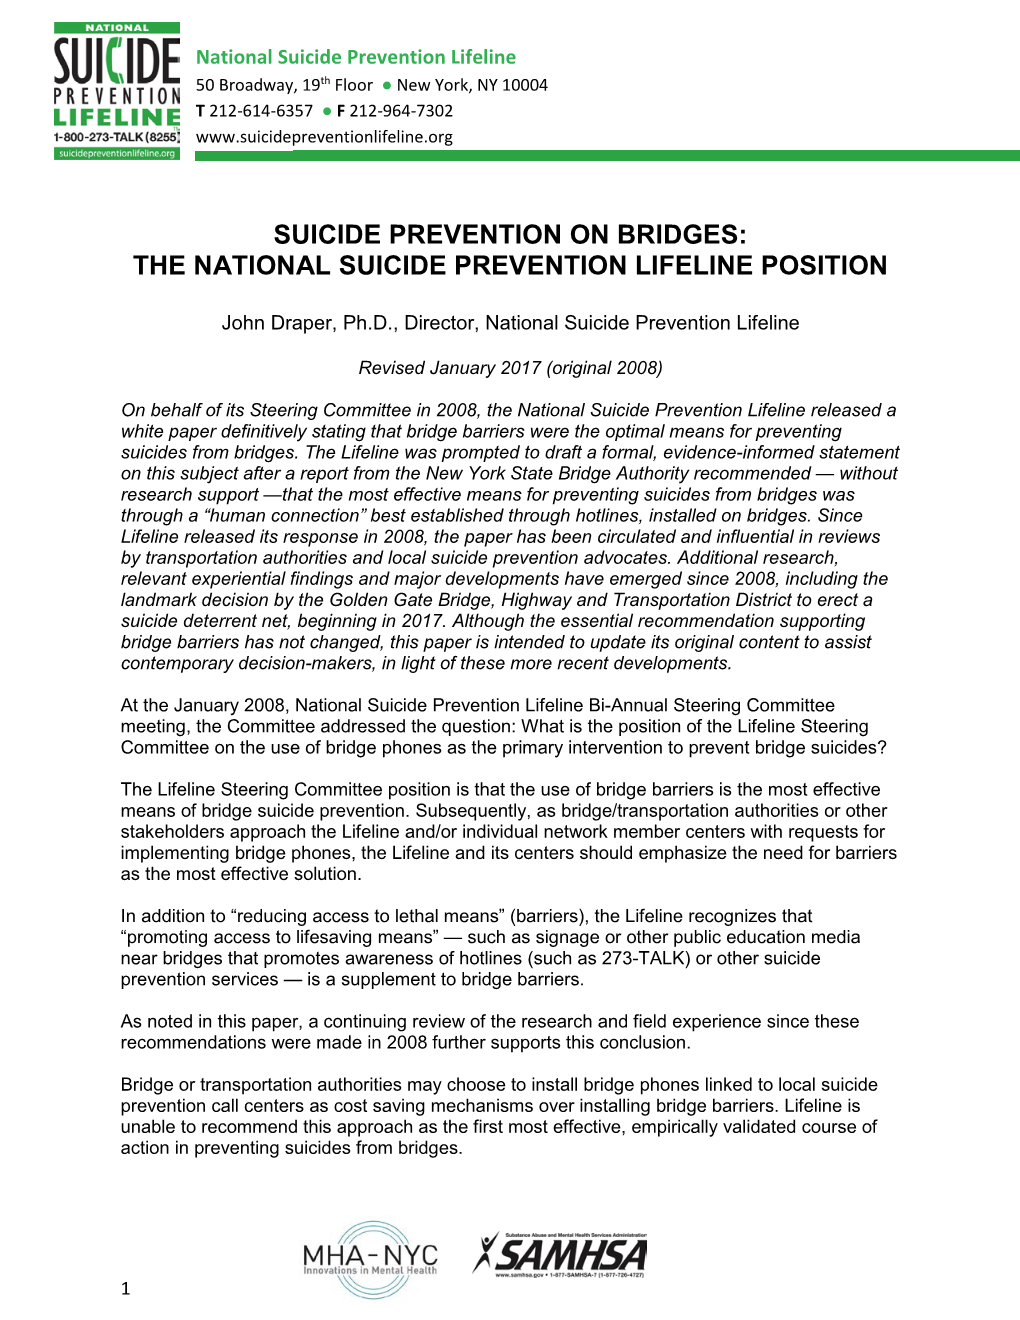 Suicide Prevention on Bridges: the National Suicide Prevention Lifeline Position